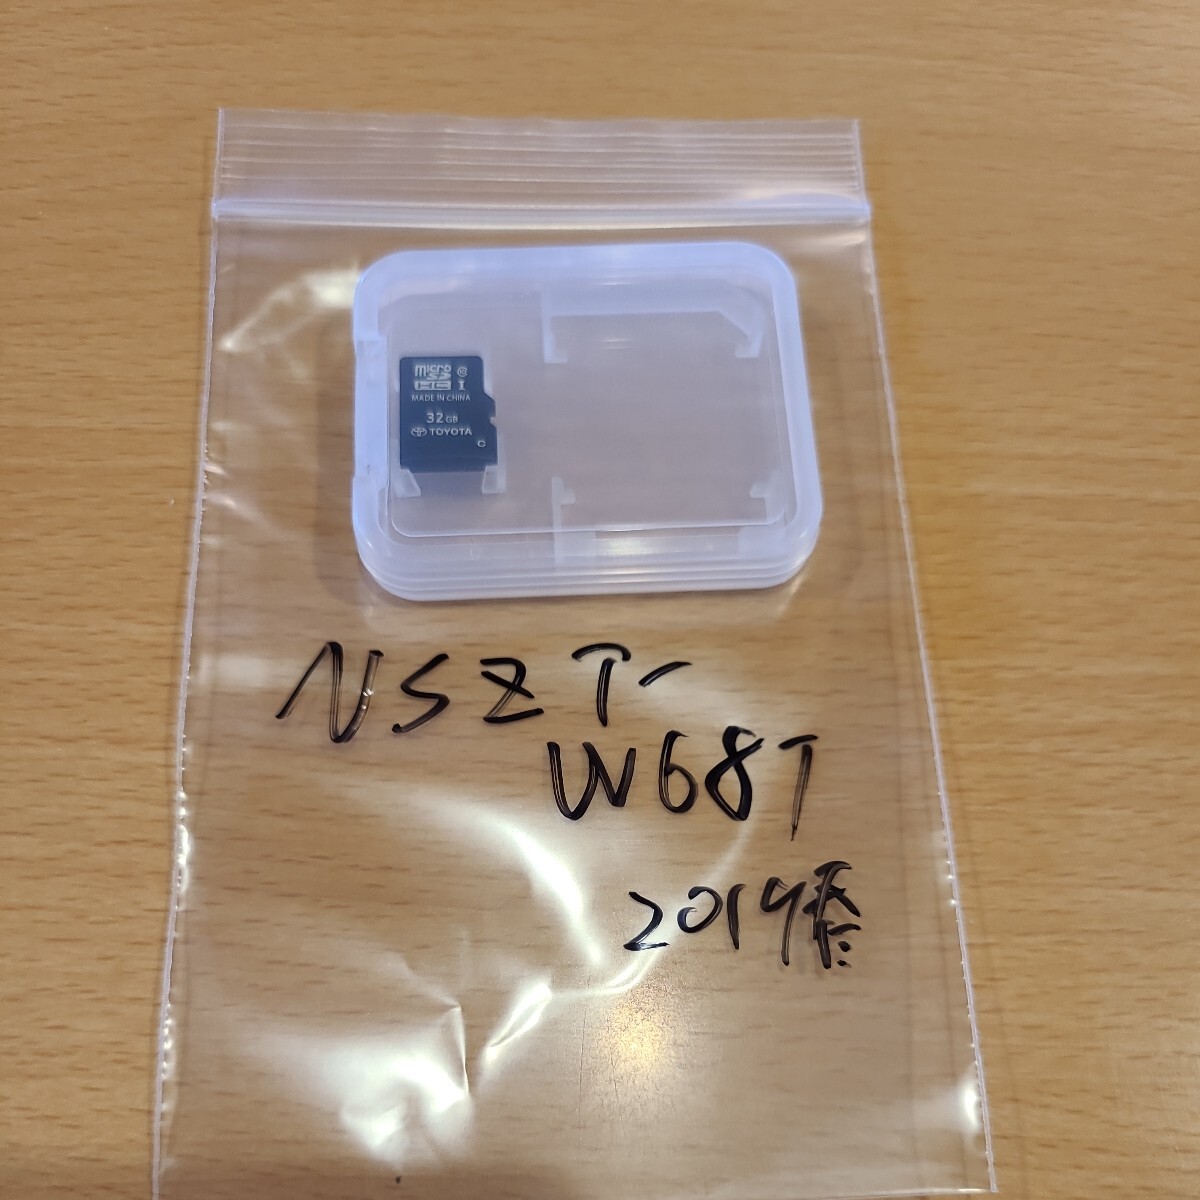 NSZT-W68T 08675-0AV43 2019年 TOYOTA 純正ナビ  地図データ SDカード  無保証 カーナビの画像1